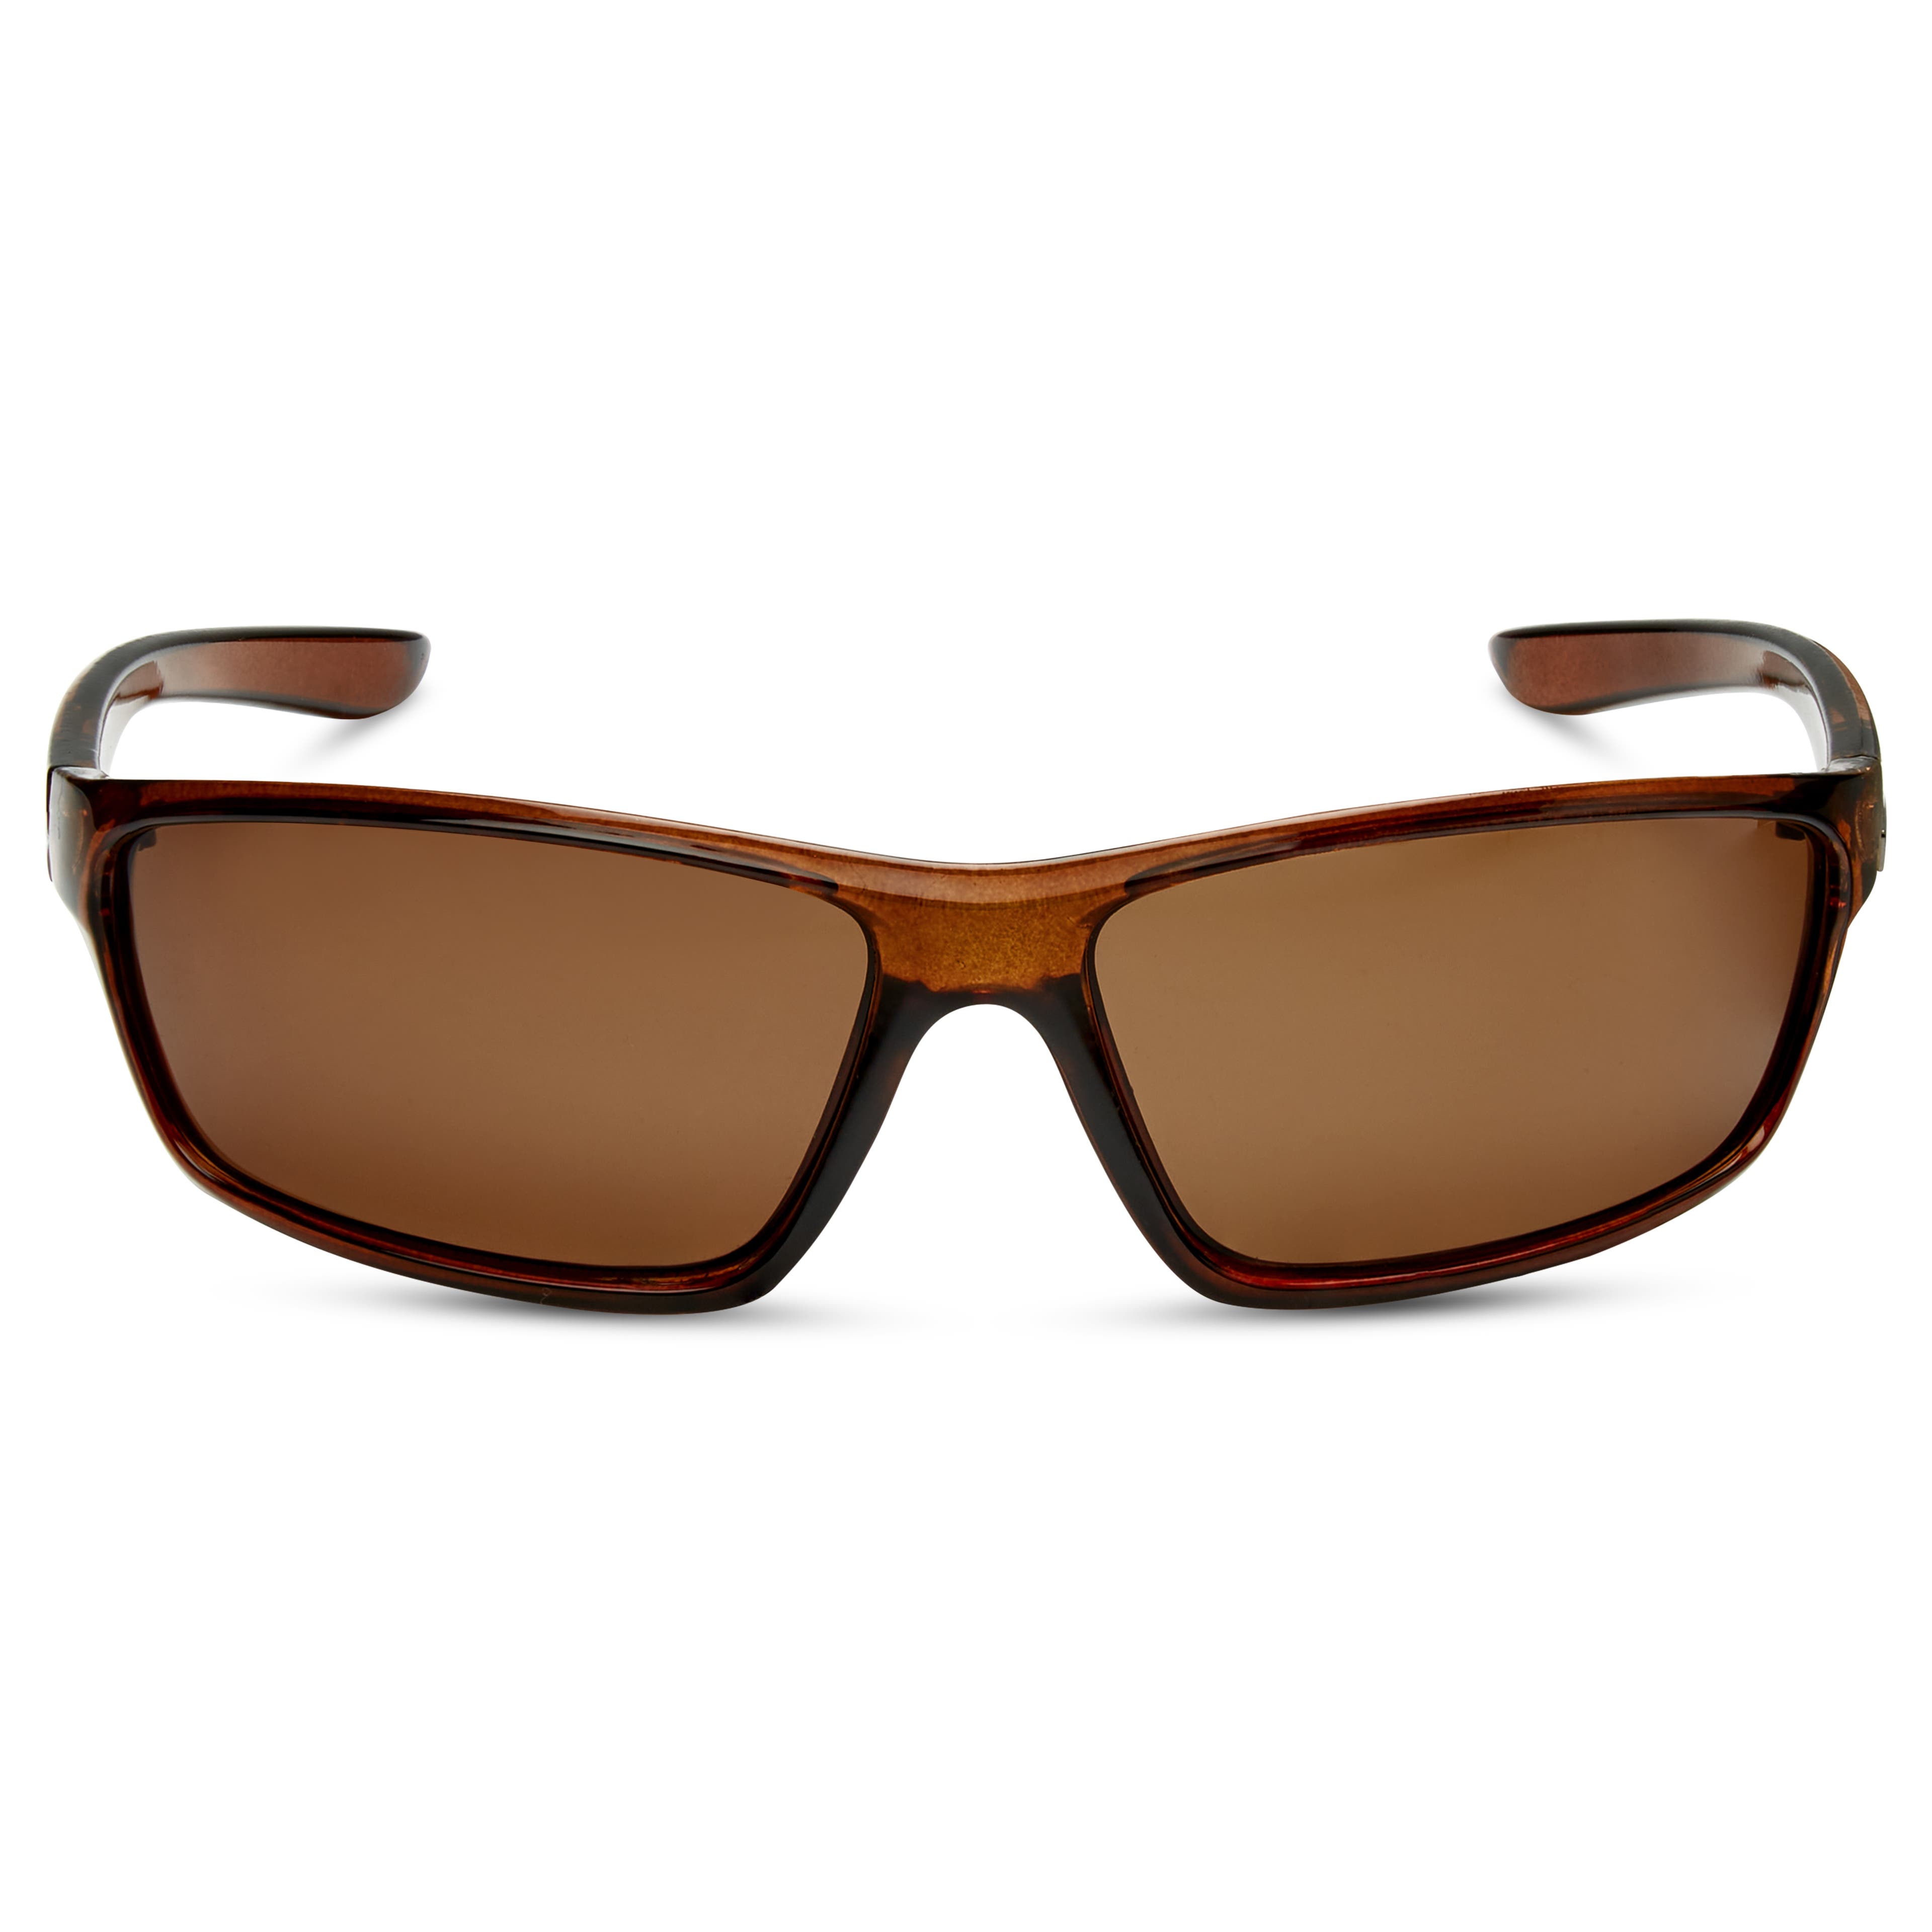 Gafas de sol polarizadas en marrón claro